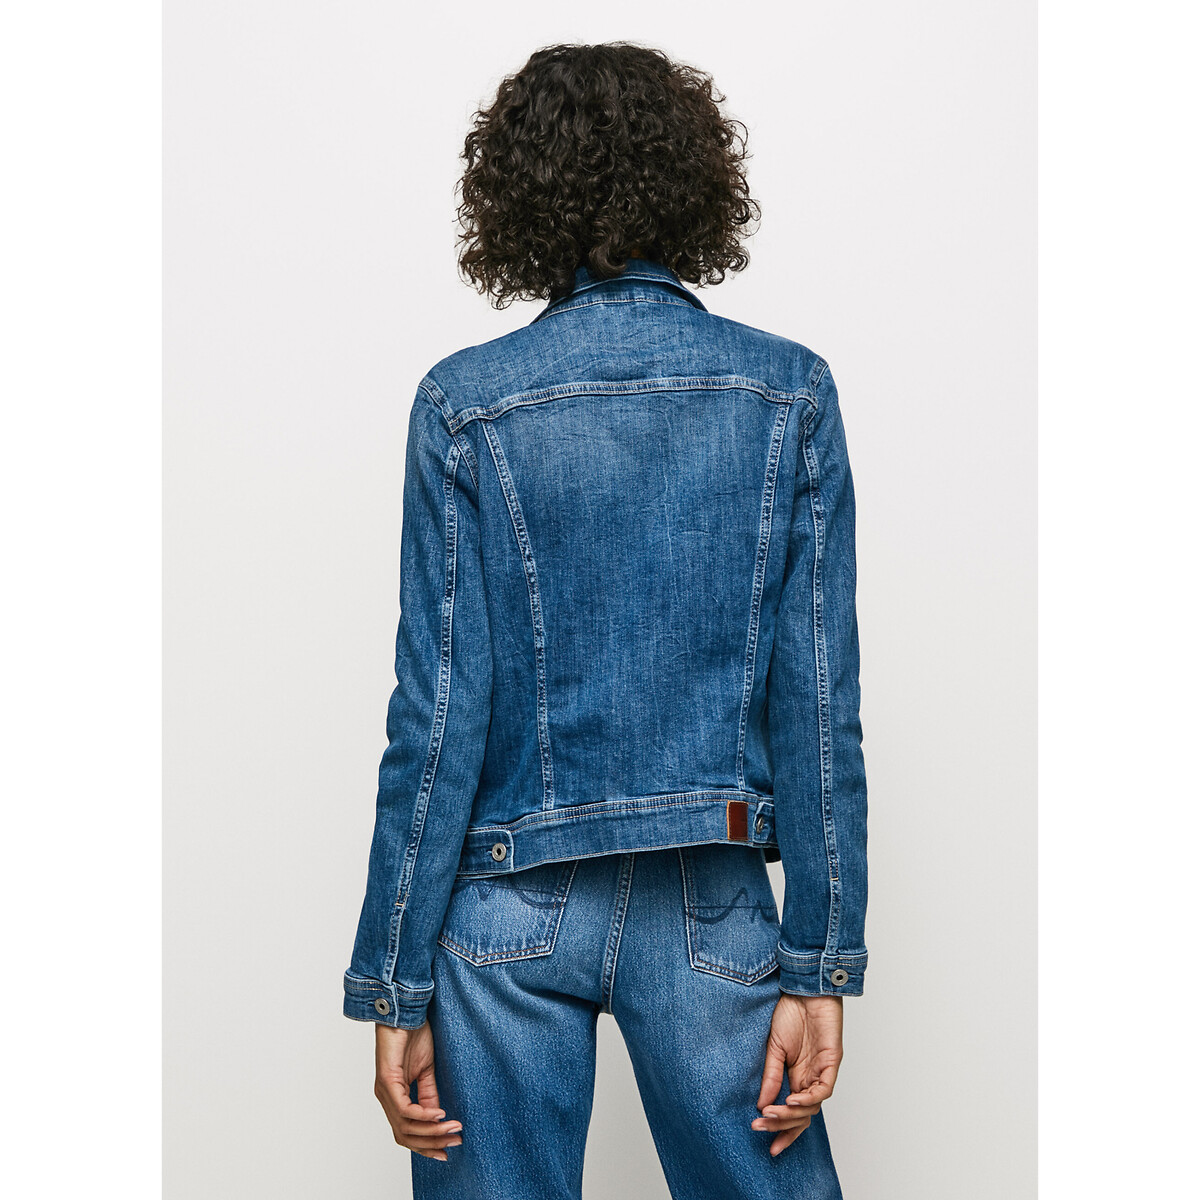 Куртка Прямого покроя из джинсовой ткани XL синий LaRedoute, размер XL - фото 3